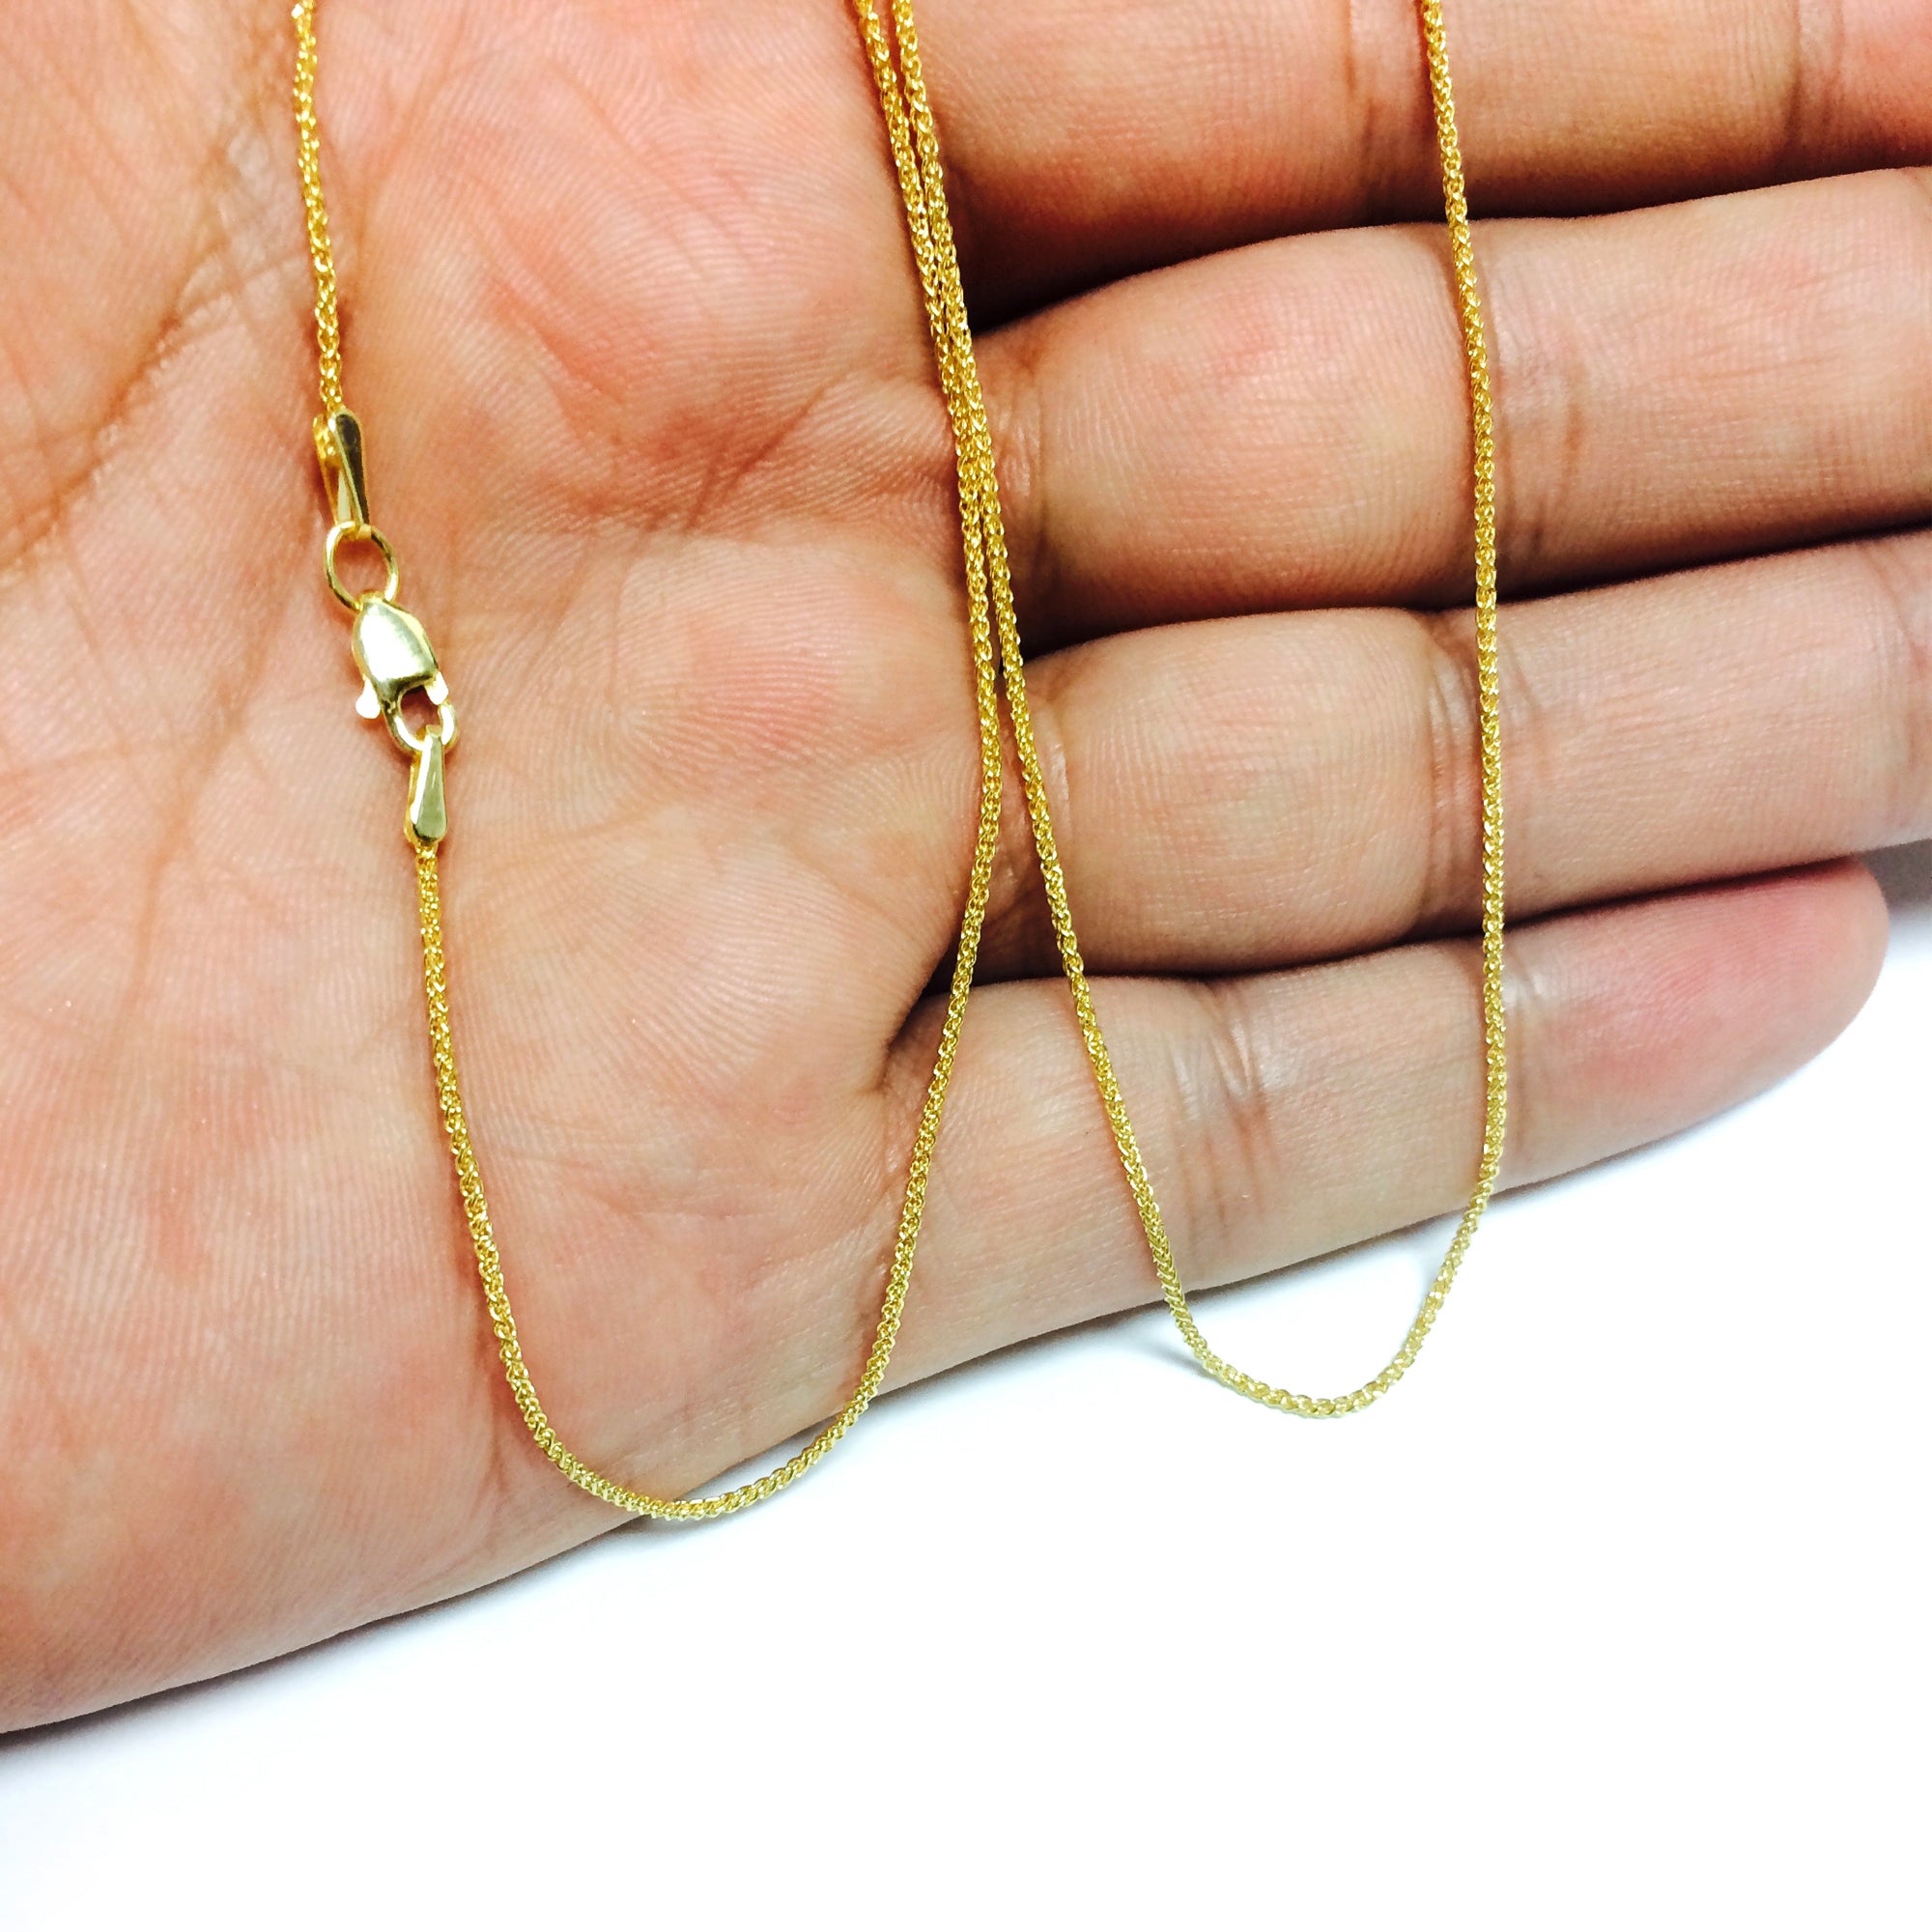 14k gult guld rund vetekedja halsband, 1,15 mm fina designersmycken för män och kvinnor